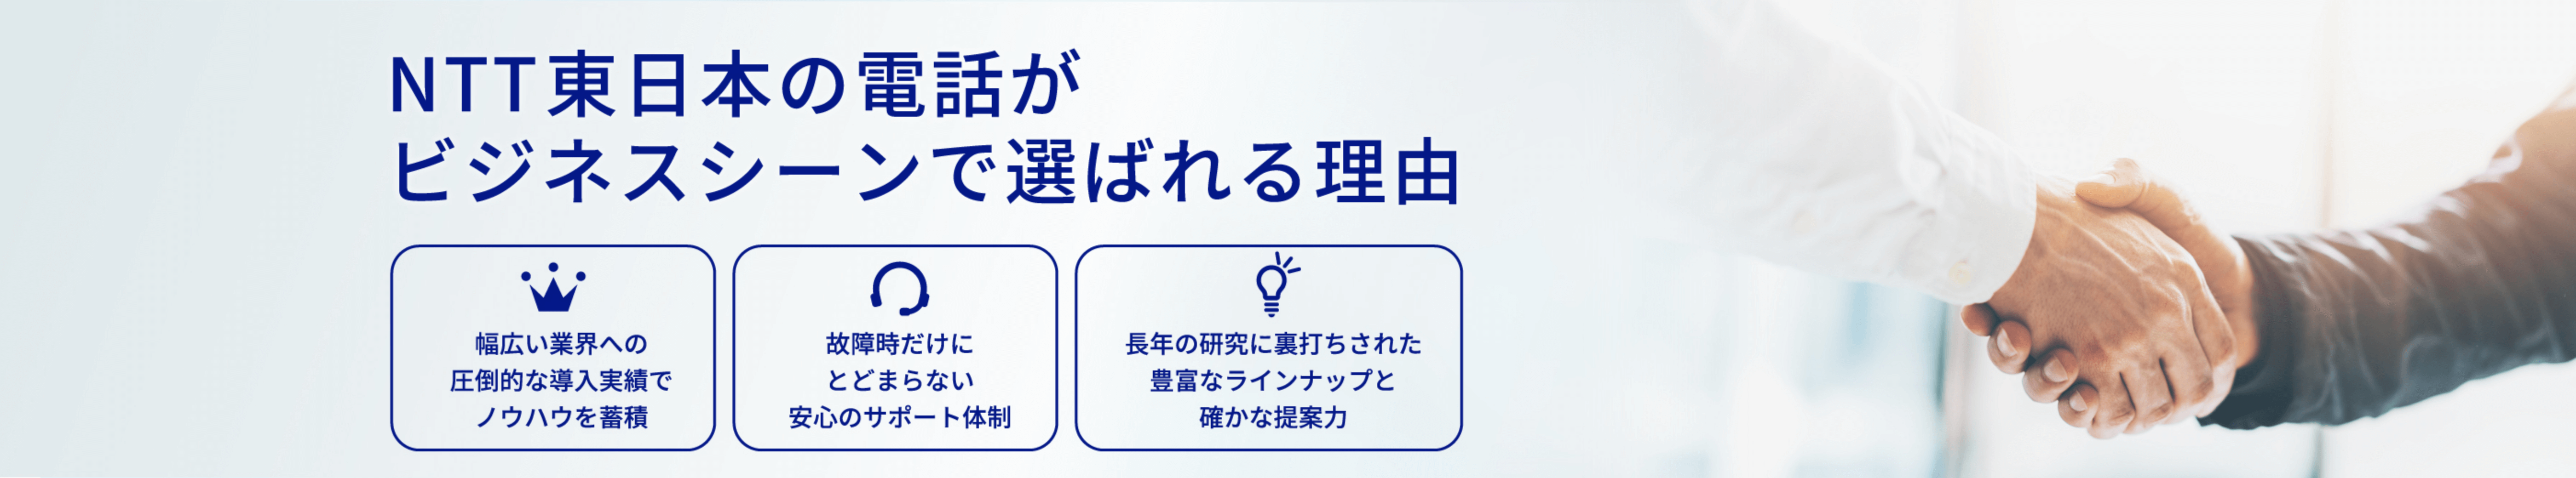 NTT東日本の電話がビジネスシーンで選ばれる理由